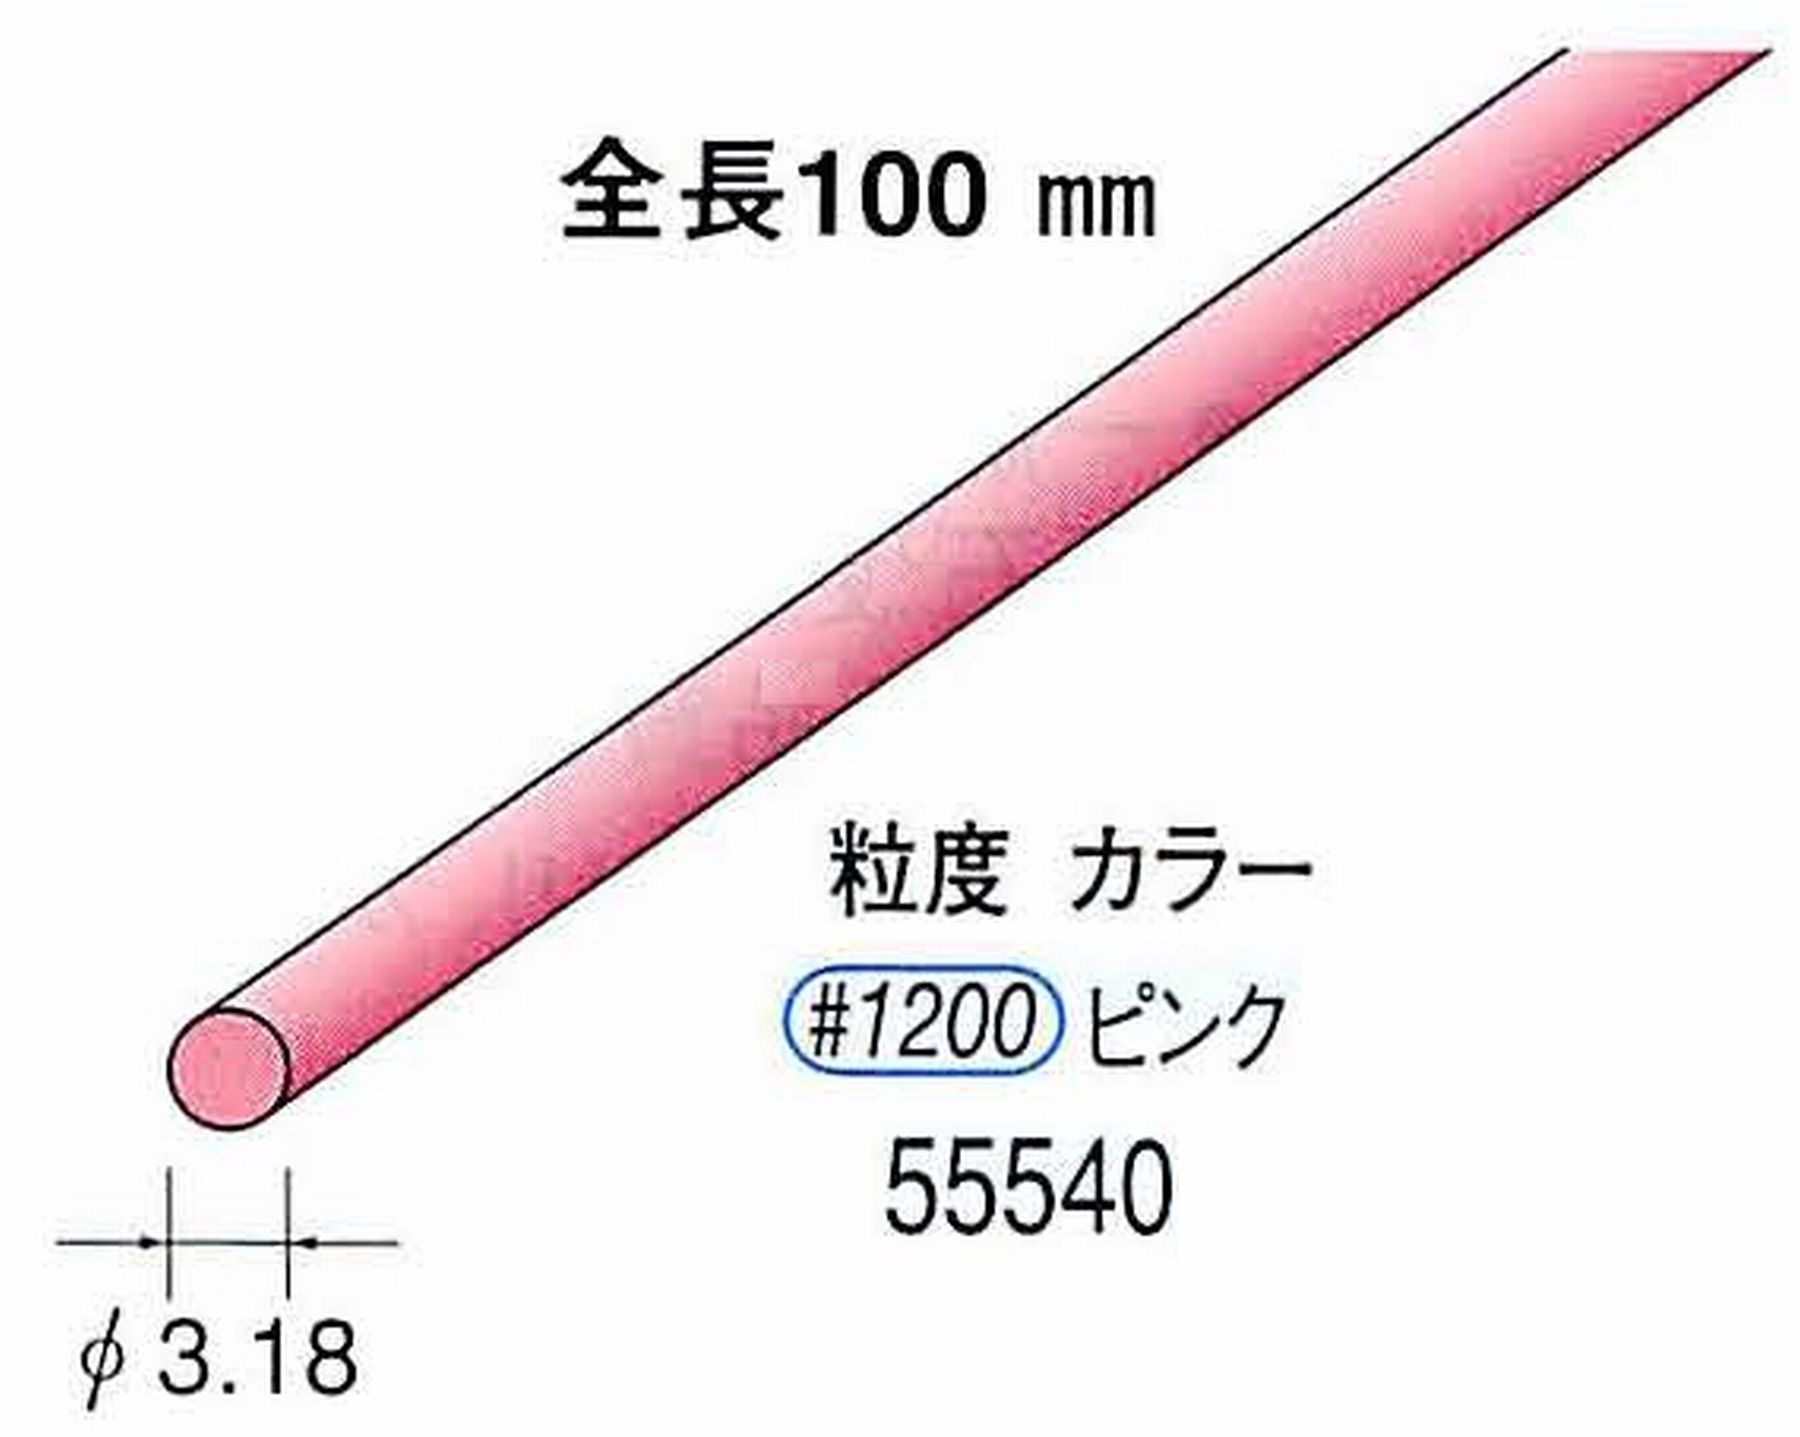 ナカニシ/NAKANISHI セラファイバー砥石 全長100mm ピンク φ3.18mm 55540